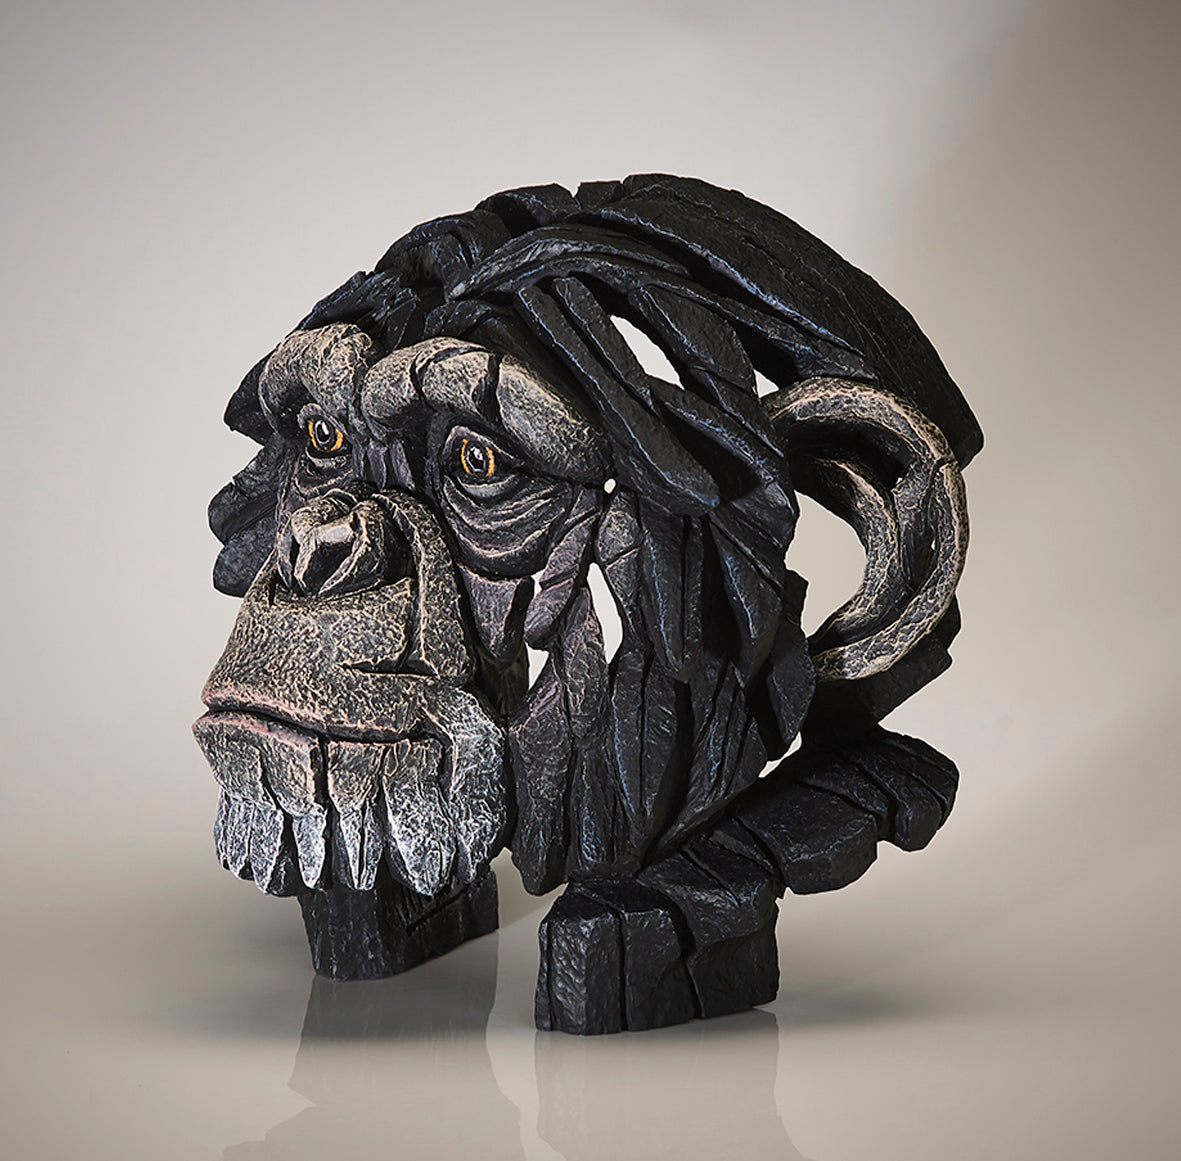 Edge Sculpture Chimpanzee Bust by Matt Buckley